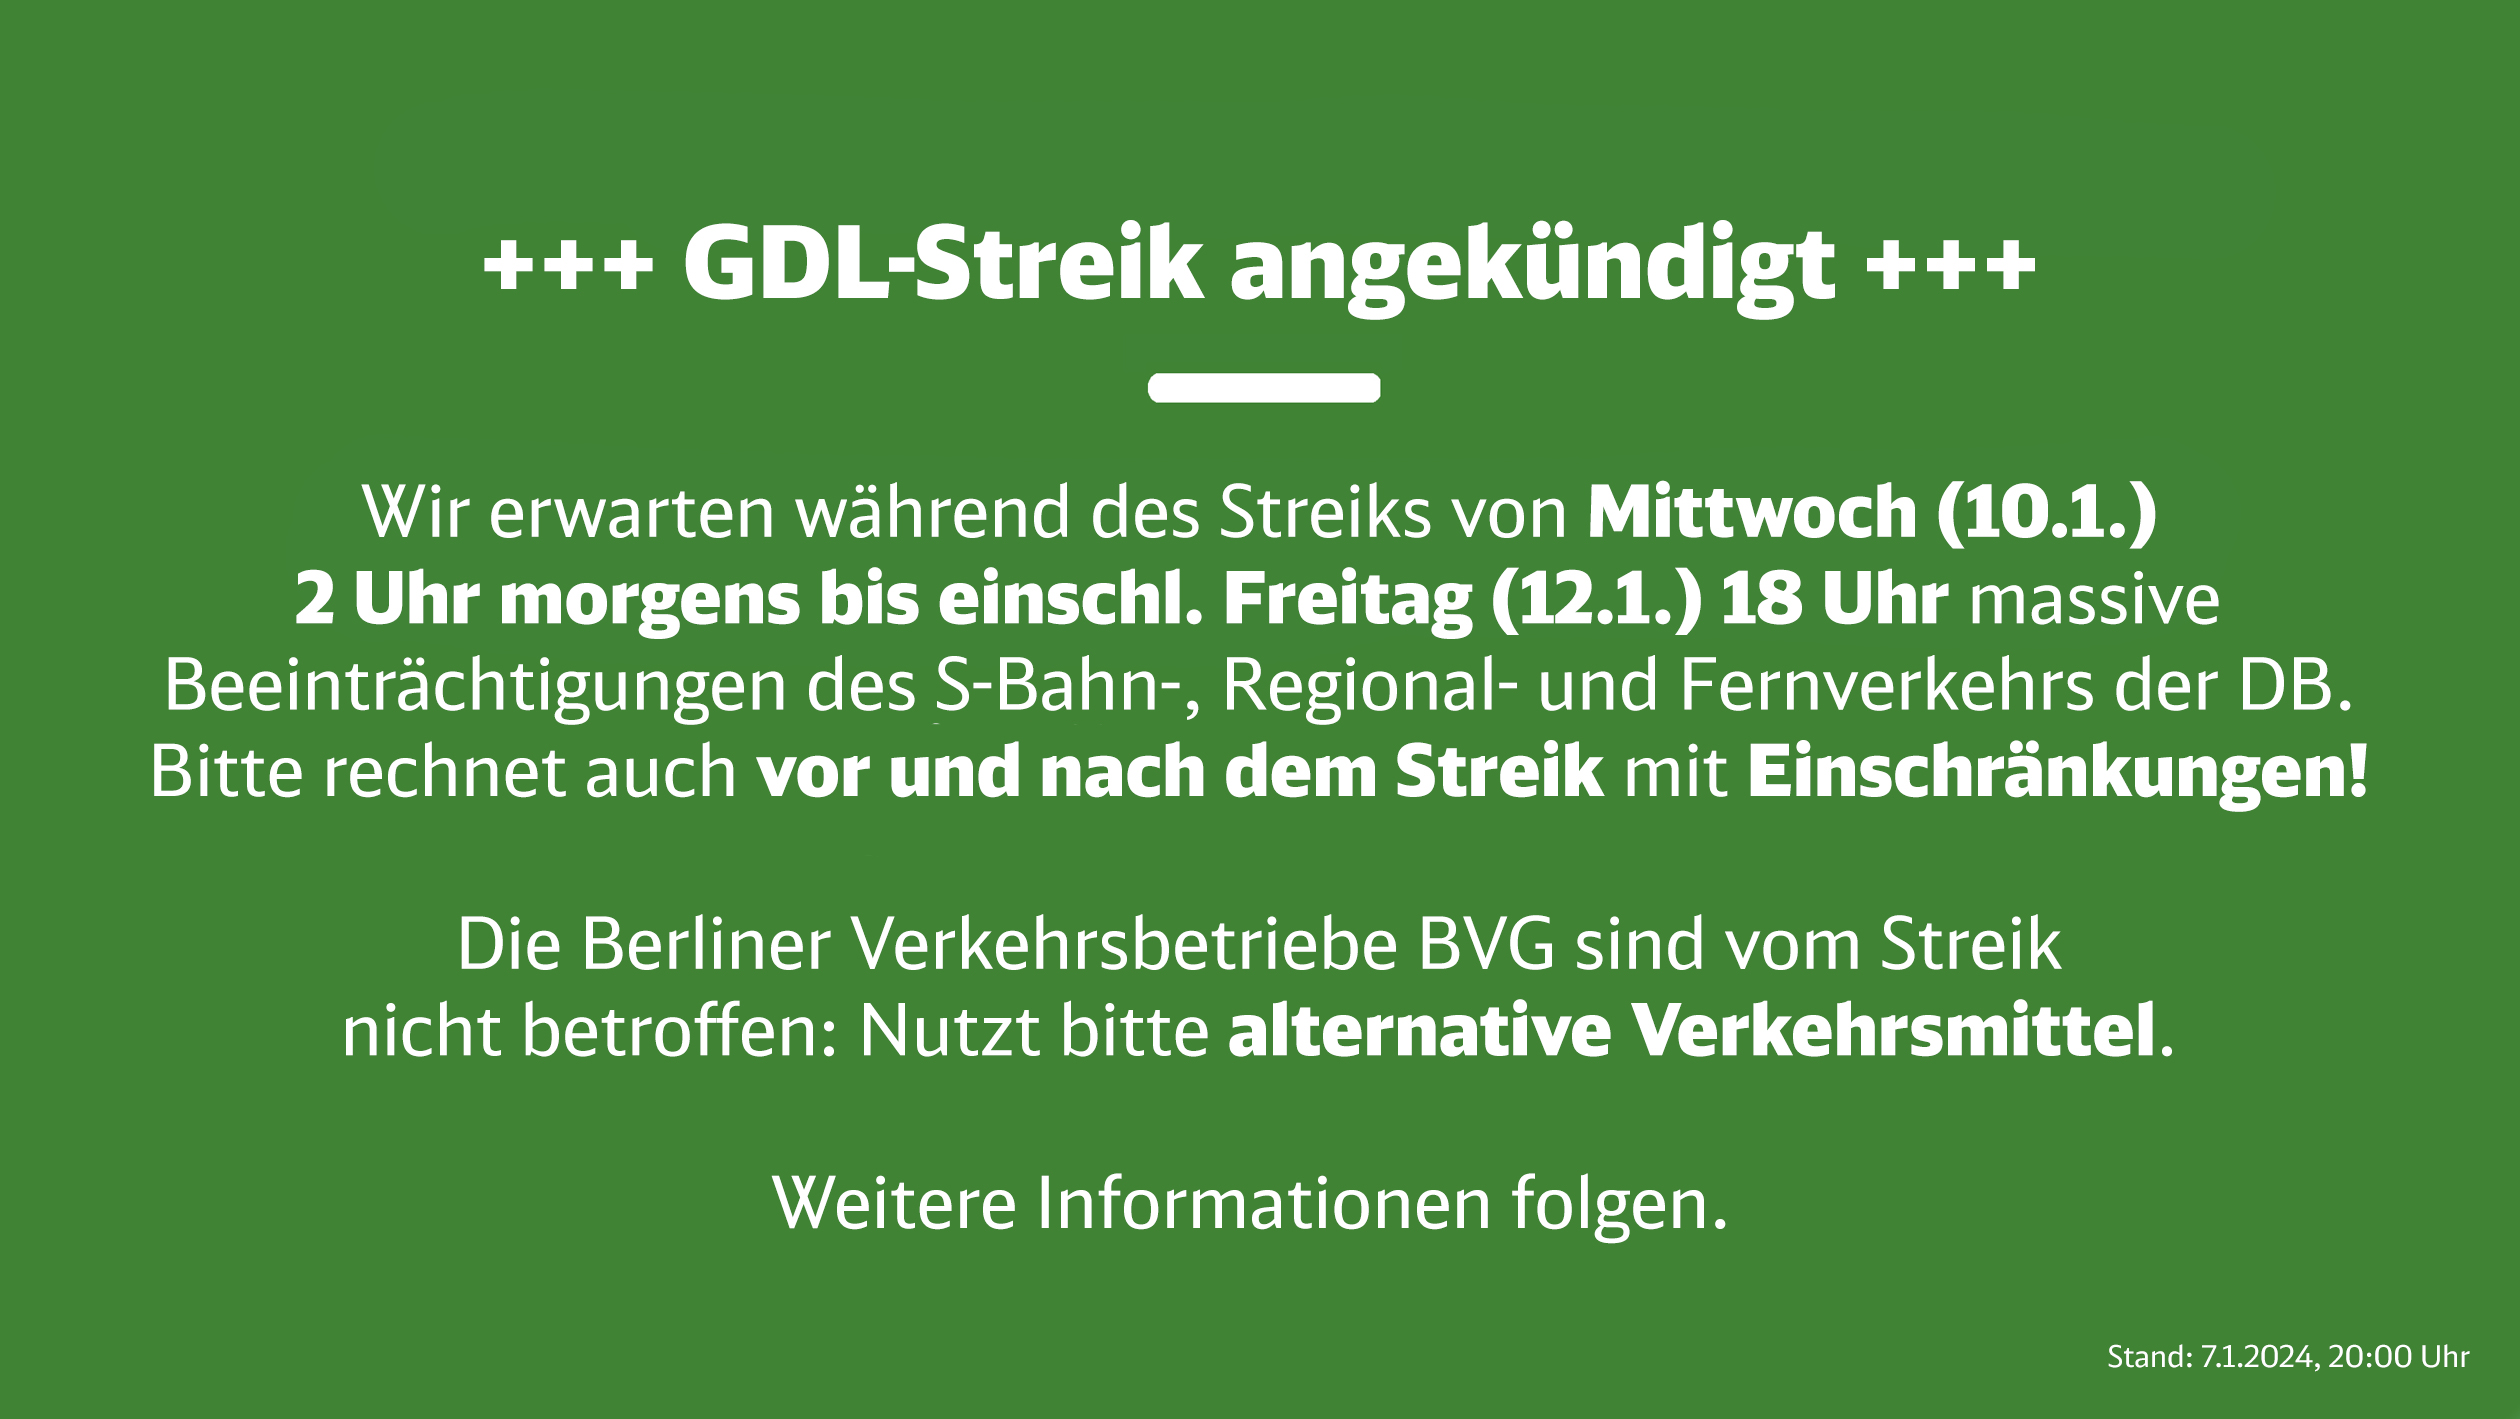 S-Bahn Berlin on X: +++ GDL-Streik angekündigt +++ Wir erwarten während  des Streiks von Mittwoch (10.1.) 2 Uhr morgens bis einschl. Freitag (12.1.)  18 Uhr massive Beeinträchtigungen des S-Bahn-, Regional- und Fernverkehrs